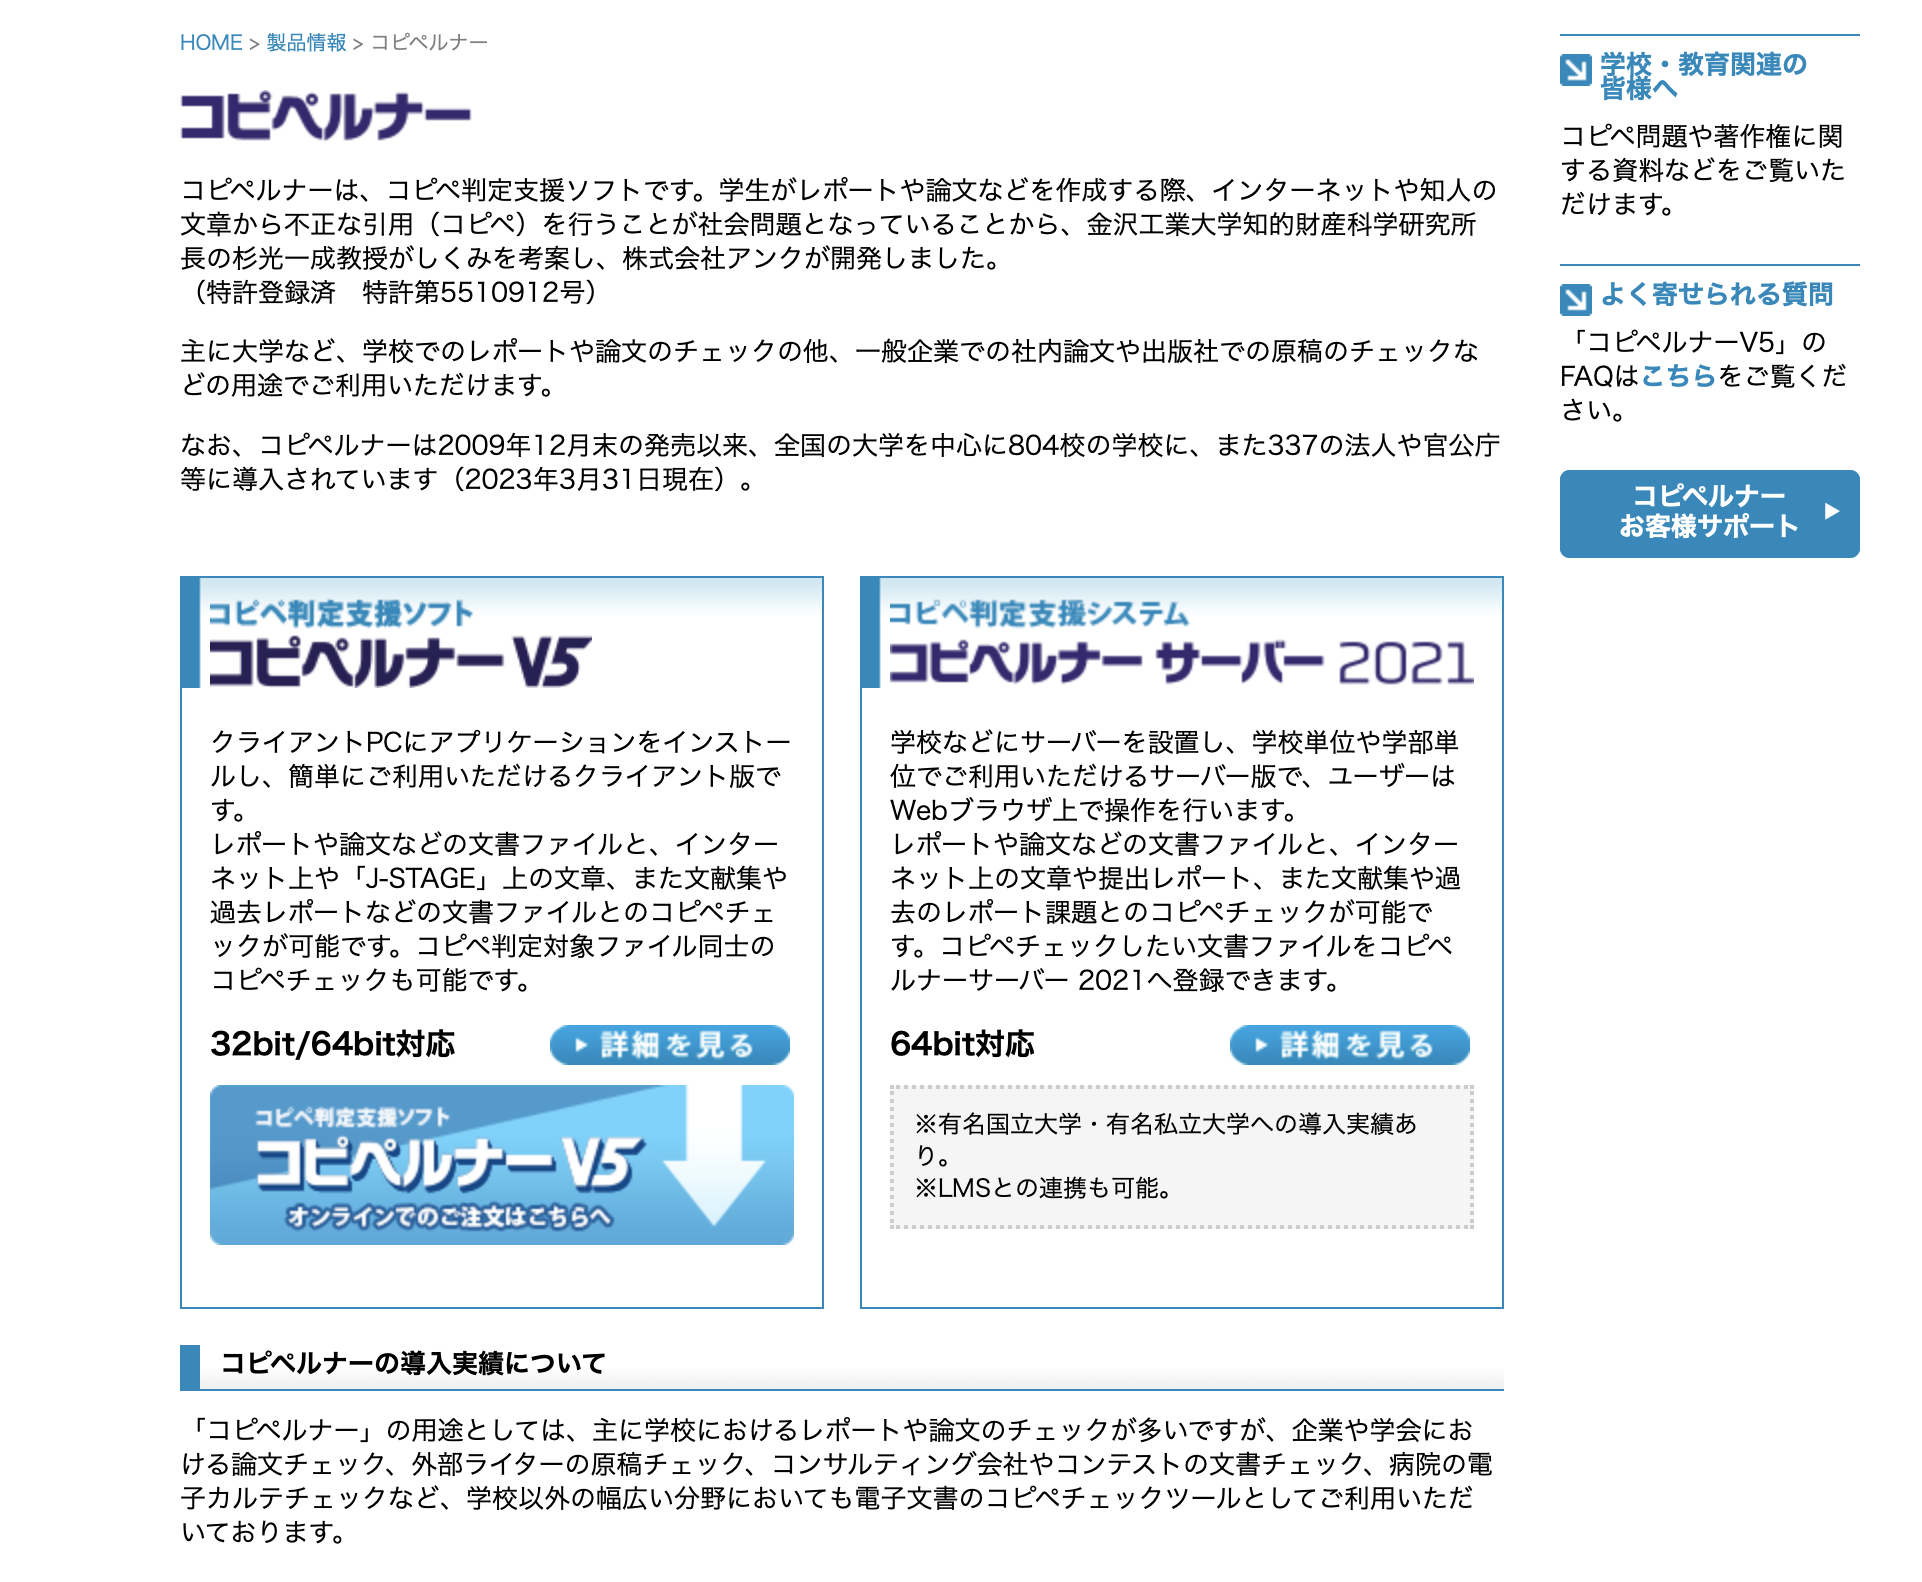 「コピペルナーV5」参考サイト：http://www.ank.co.jp/works/products/copypelna/